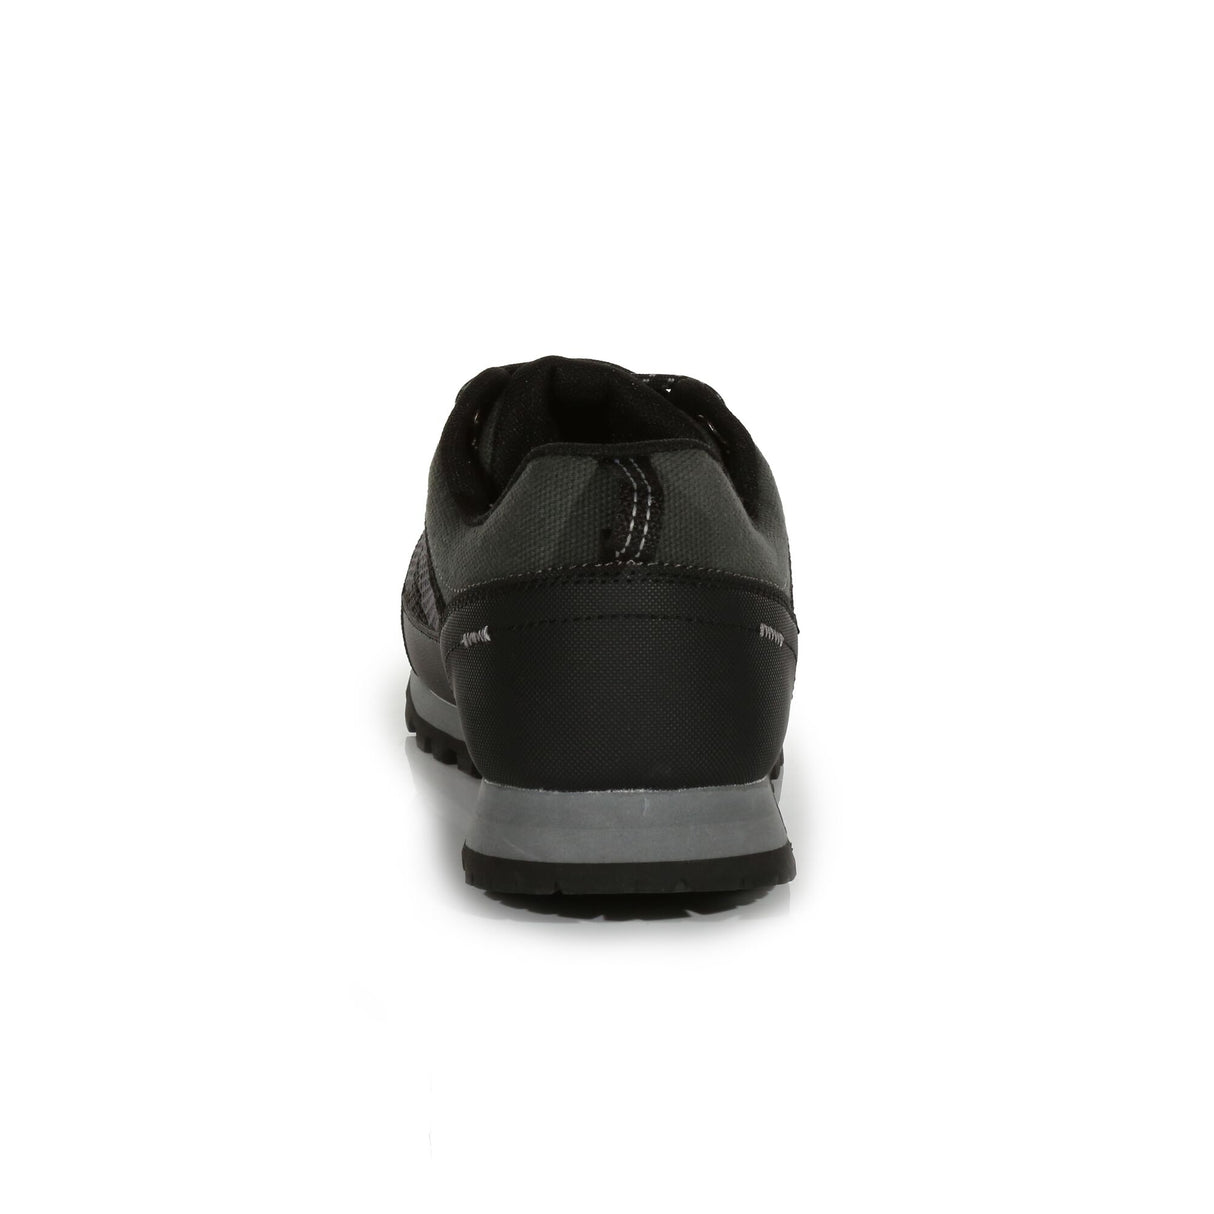 Regatta Blackthorn Evo Low Waterproof Walking Hiking Shoes - Black/Steel